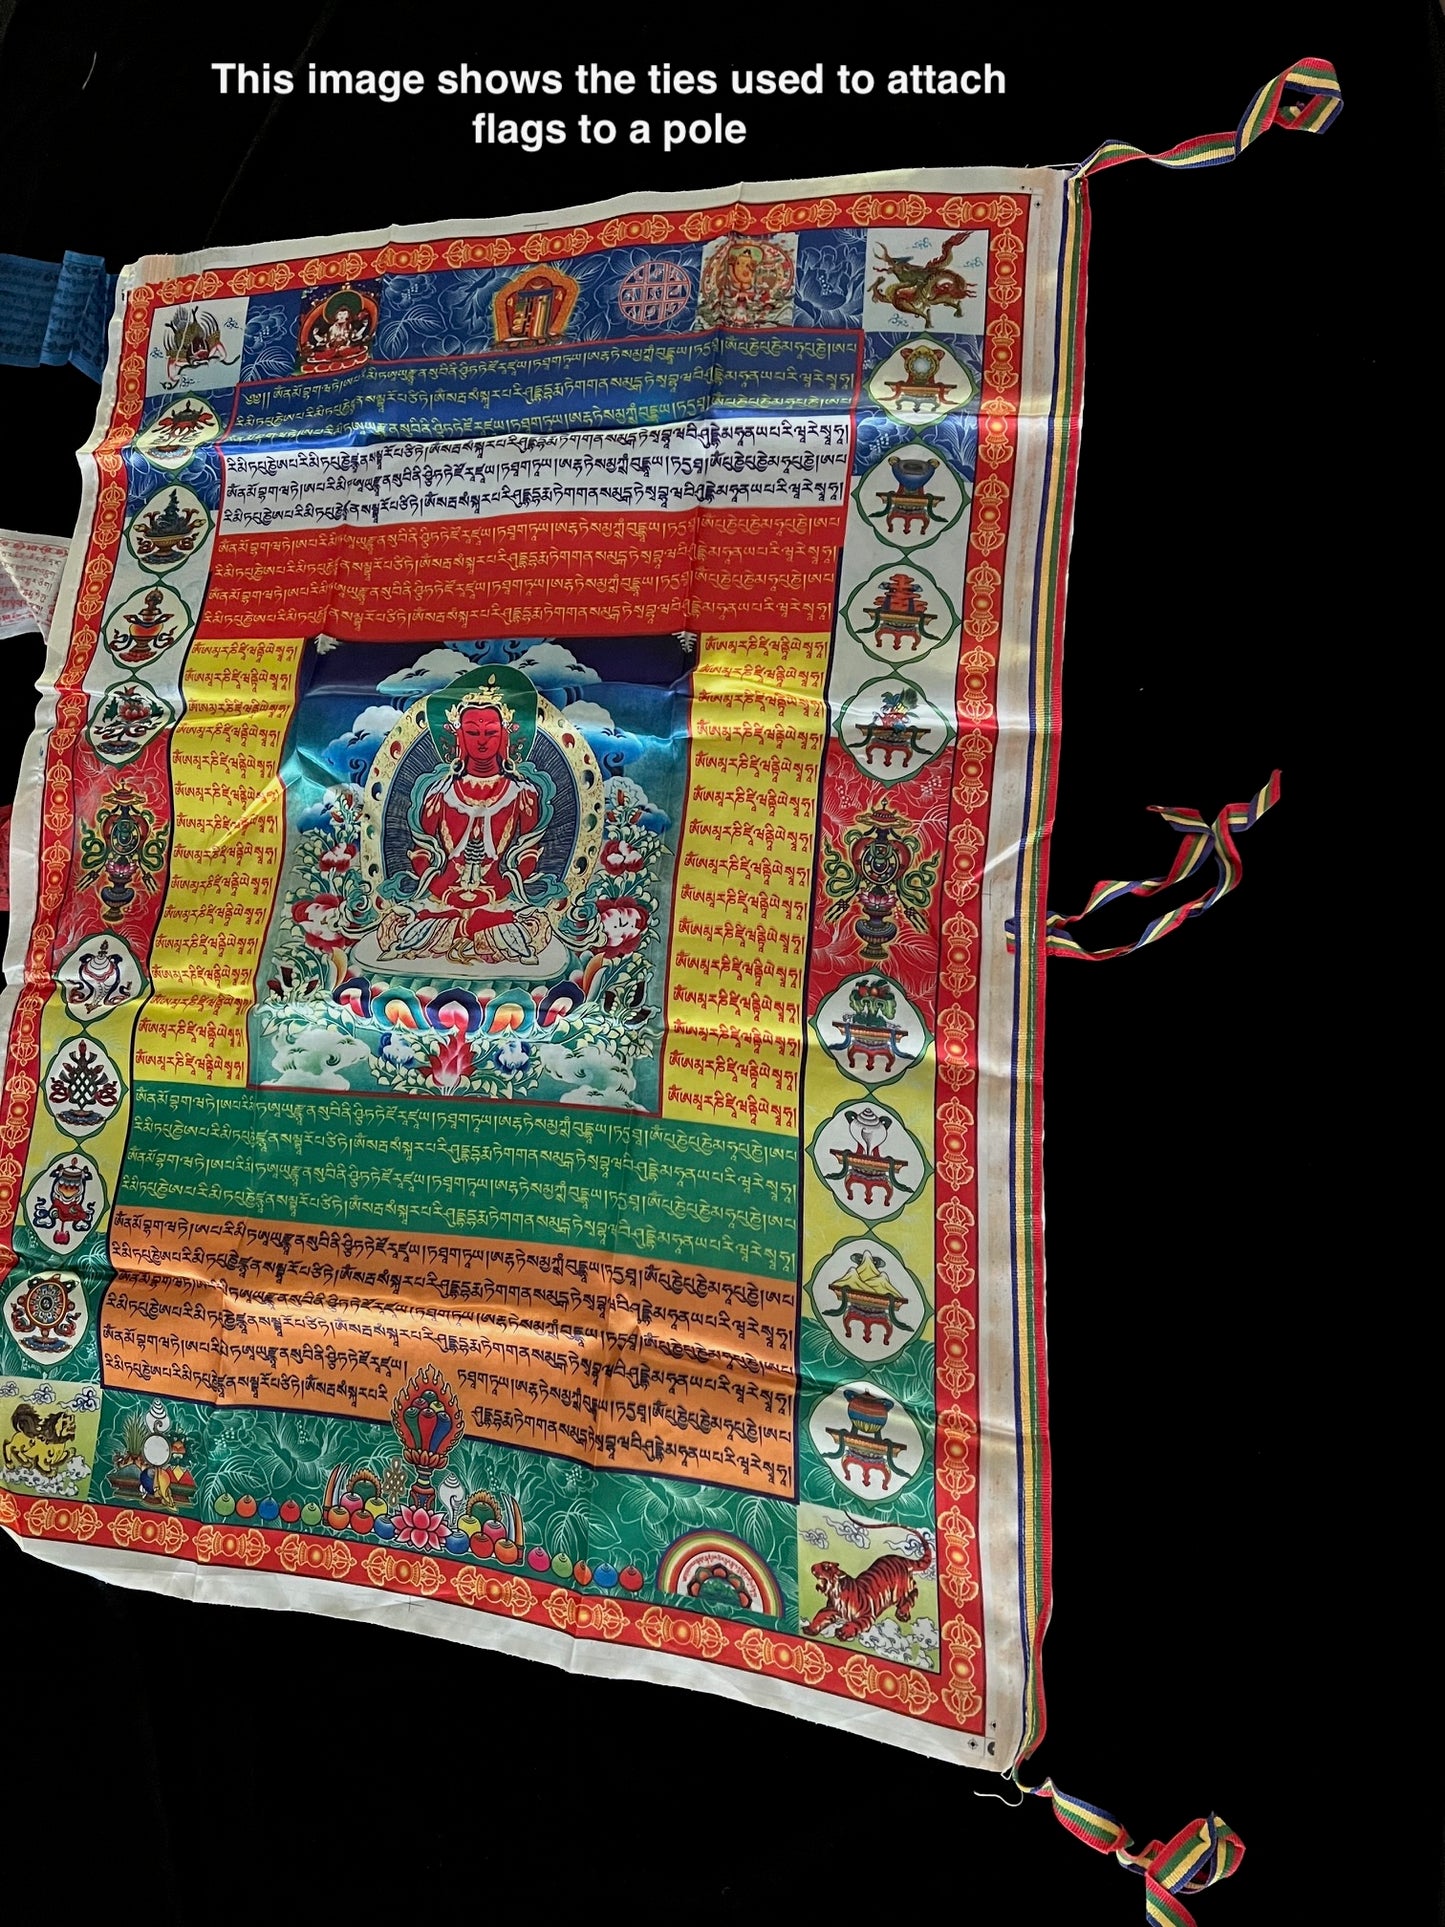 Énorme bannière de drapeau de prière parapluie blanc | Drapeaux de prière tibétains | 27 pouces x 36 pouces | 1 seul drapeau | Poly Soie | drapeau ou mur vertical | Sitatapatra